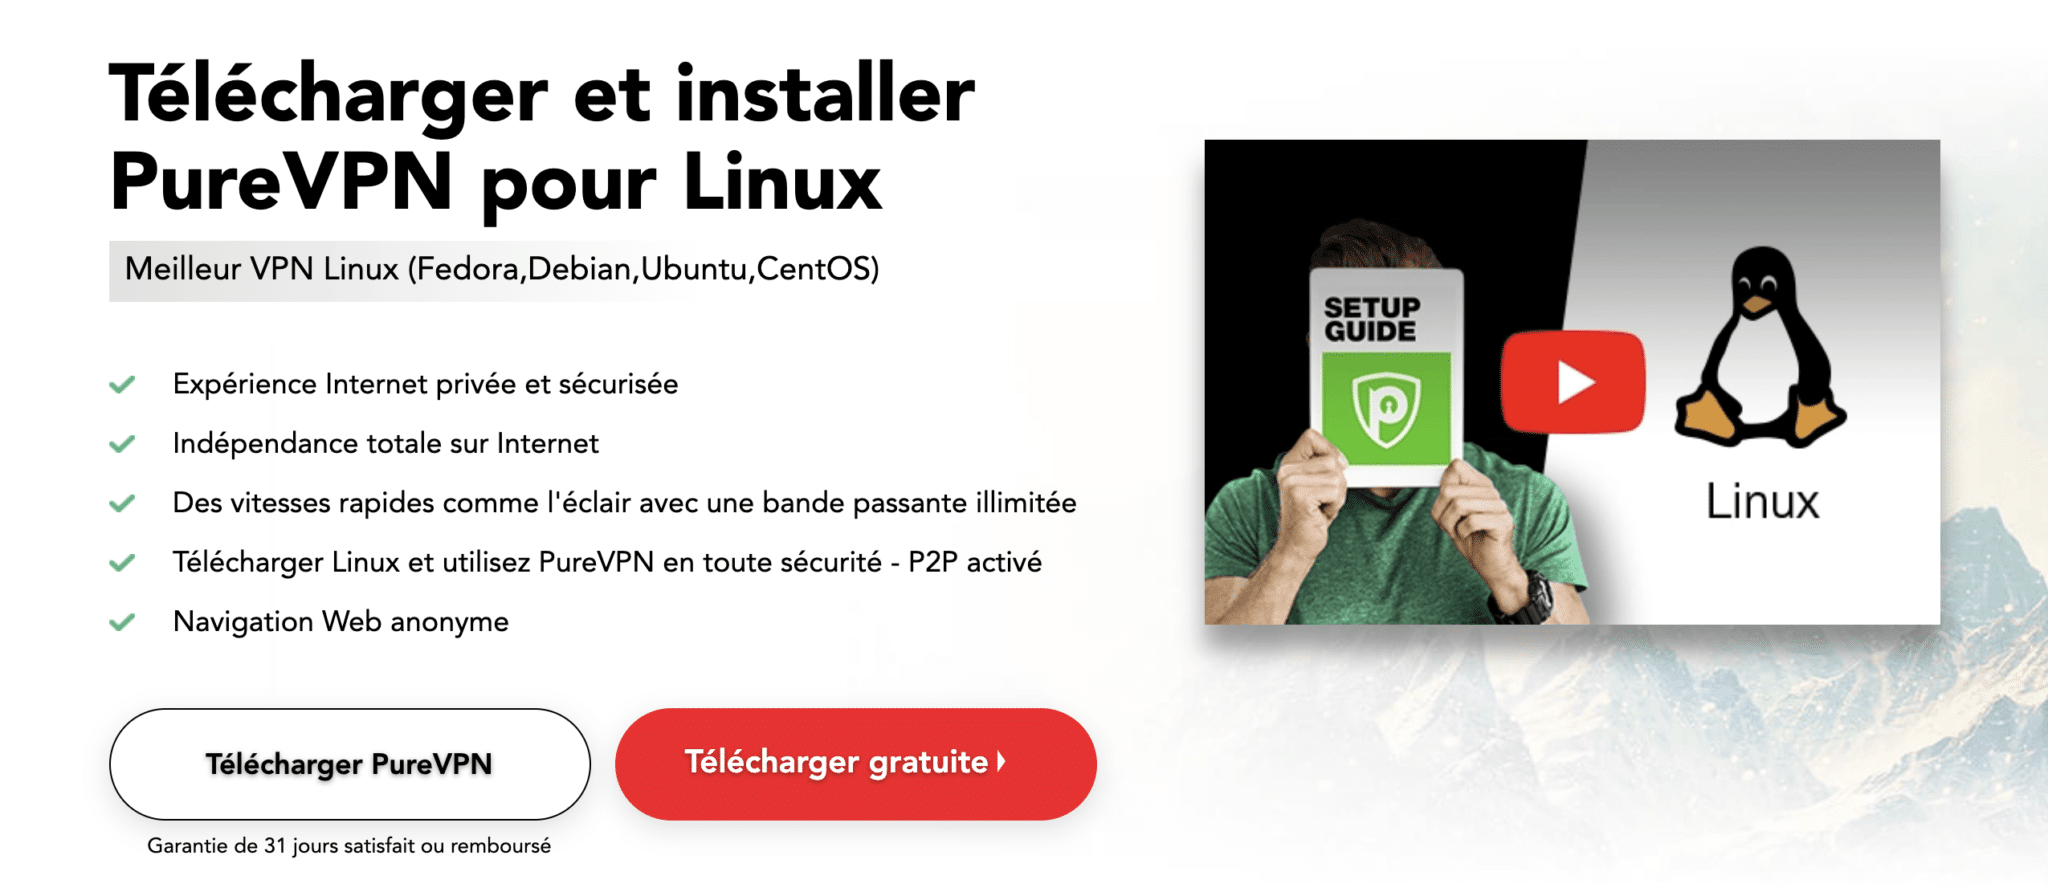 PureVPN Linux